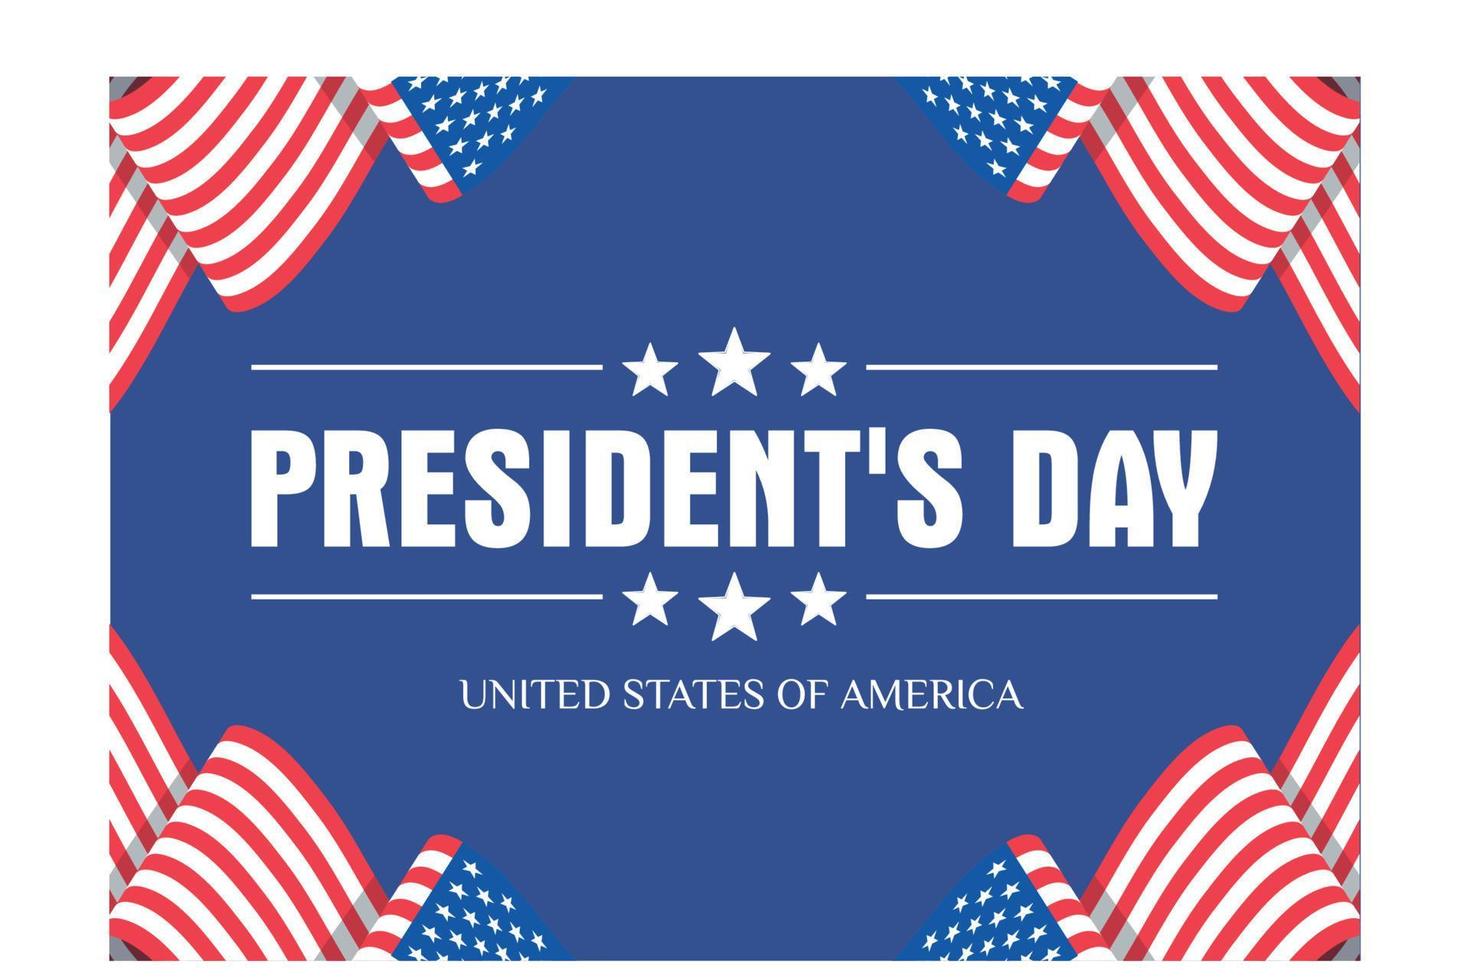 diseño de fondo del día de los presidentes, pancarta, póster, tarjeta de felicitación, ilustración moderna de vector plano